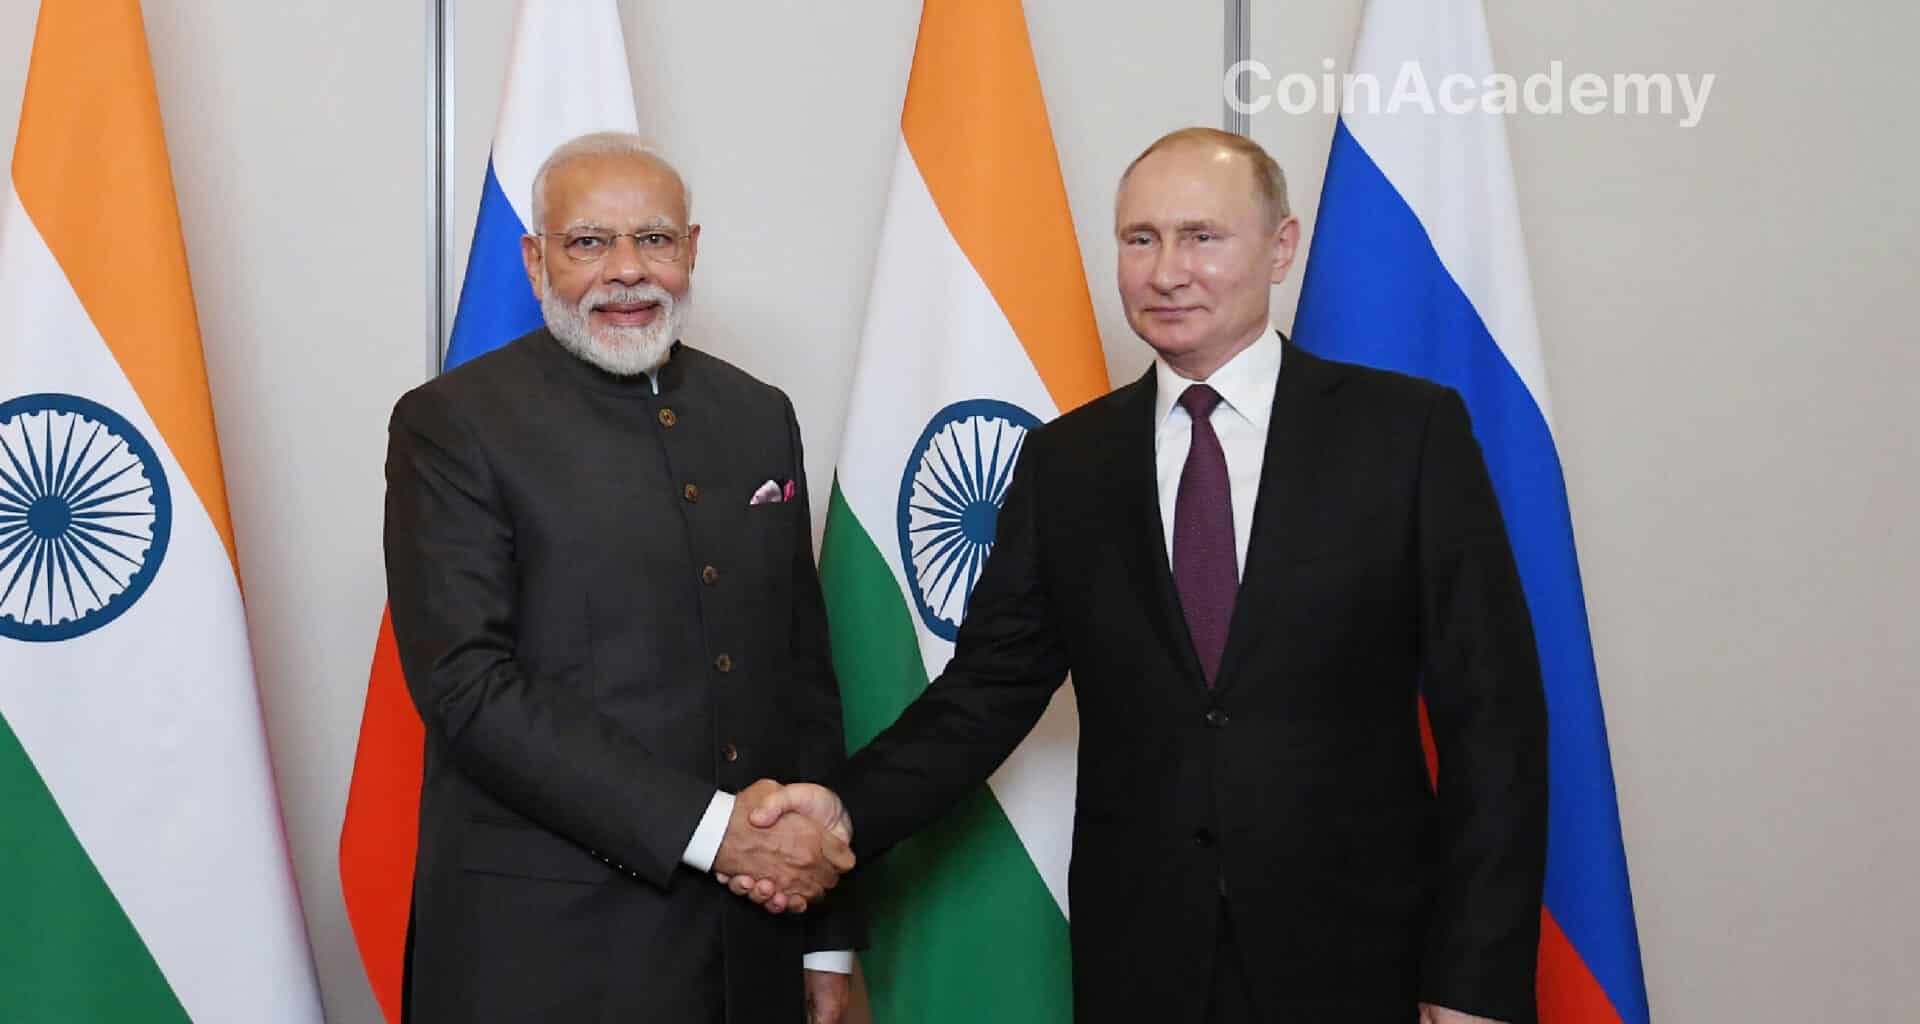 Les BRICS sont un groupe de cinq pays qui se réunissent depuis 2011 en sommets annuels : Brésil, Russie, Inde, Chine et Afrique du Sud.